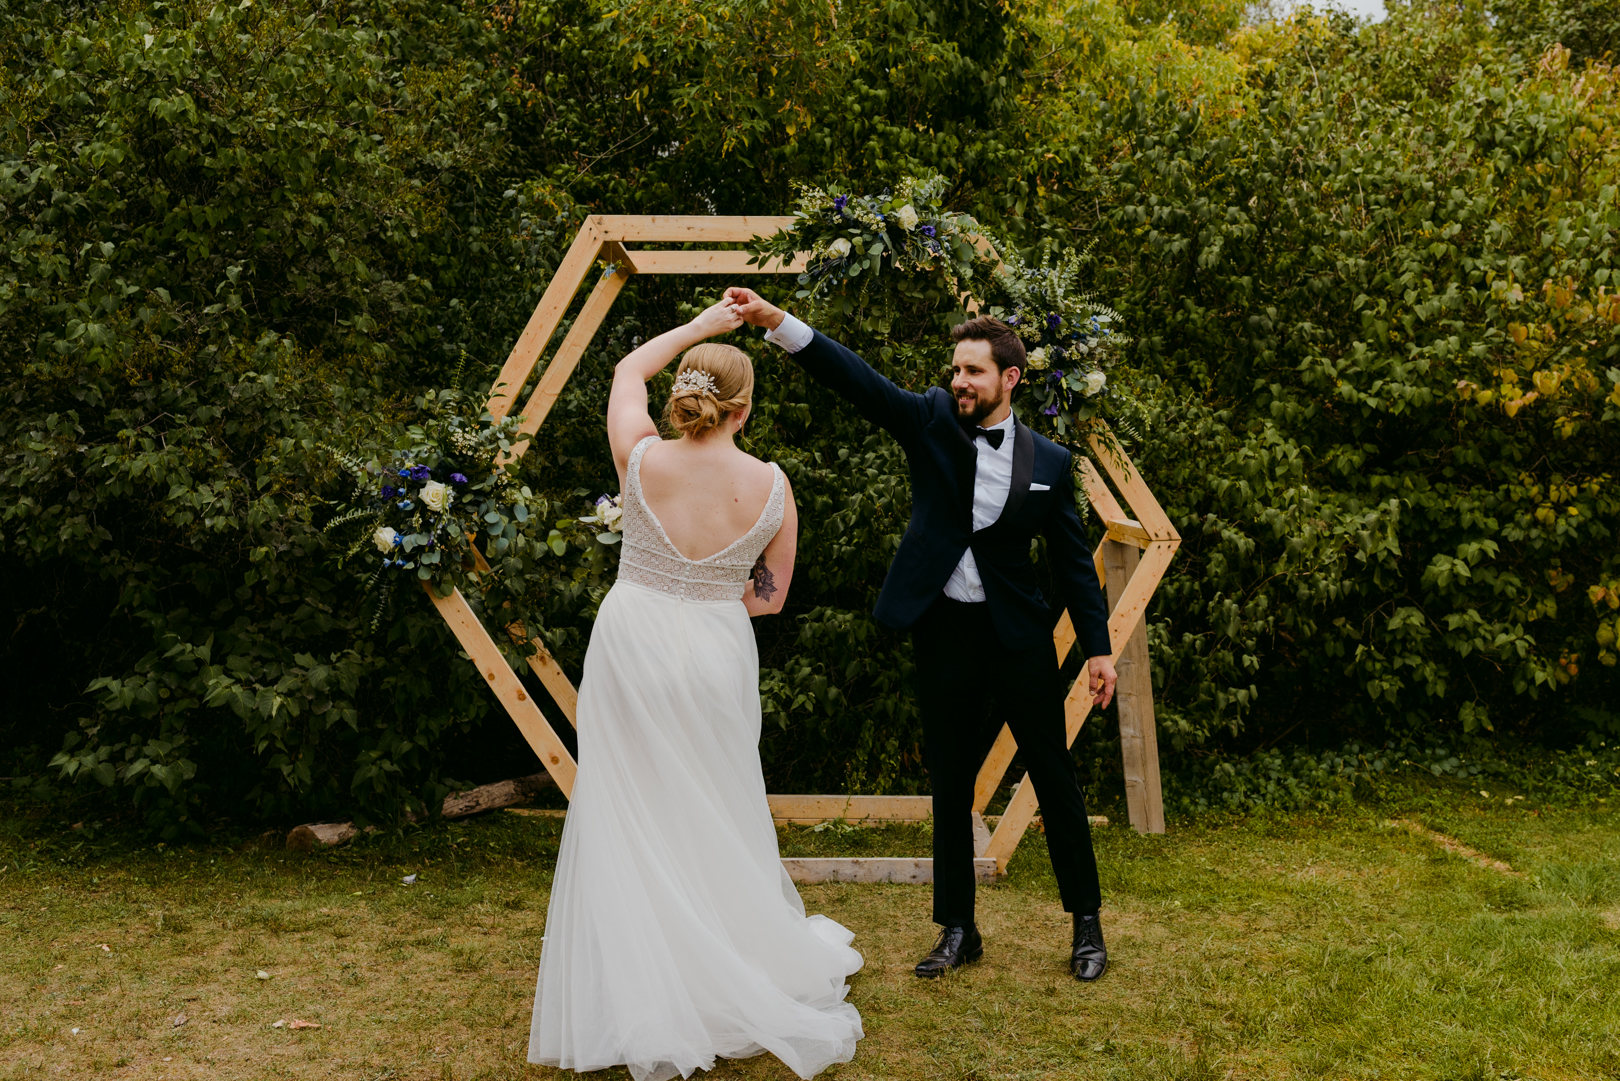 groom twirling bride in front of wooden hexagon